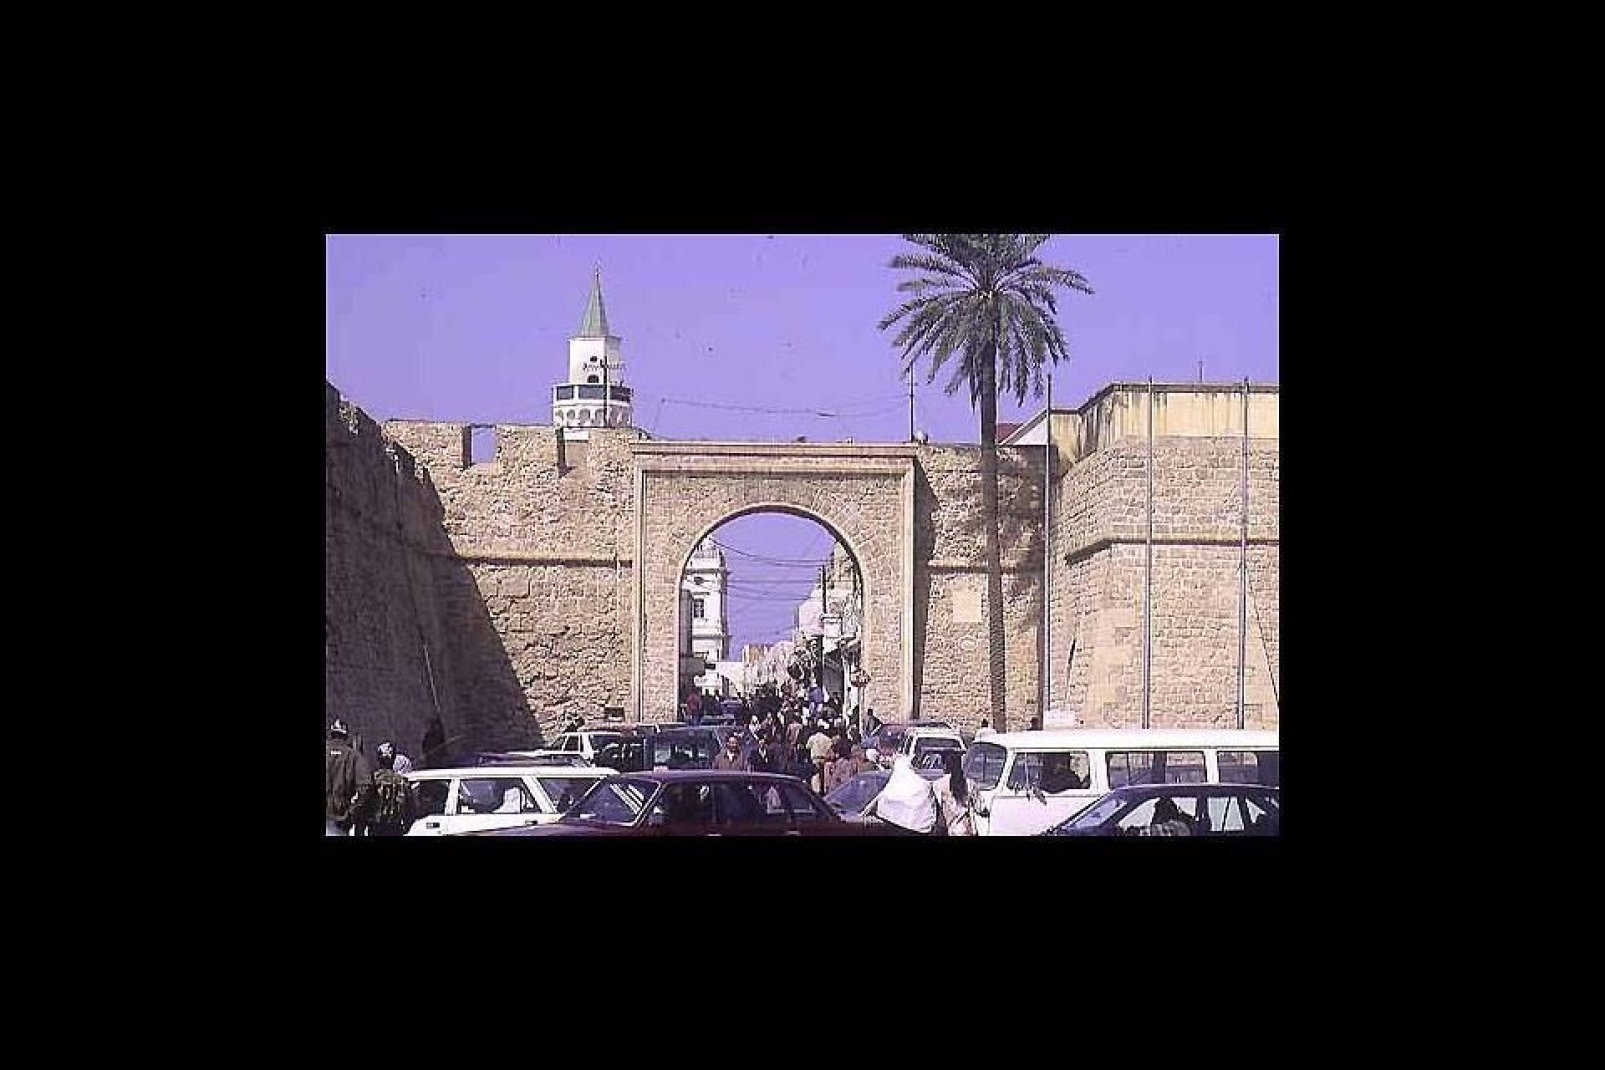 Trípoli posee una historia ancestral de la que todavía hoy conserva numerosos vestigios: en la fotografía, la puerta que conduce a la medina.